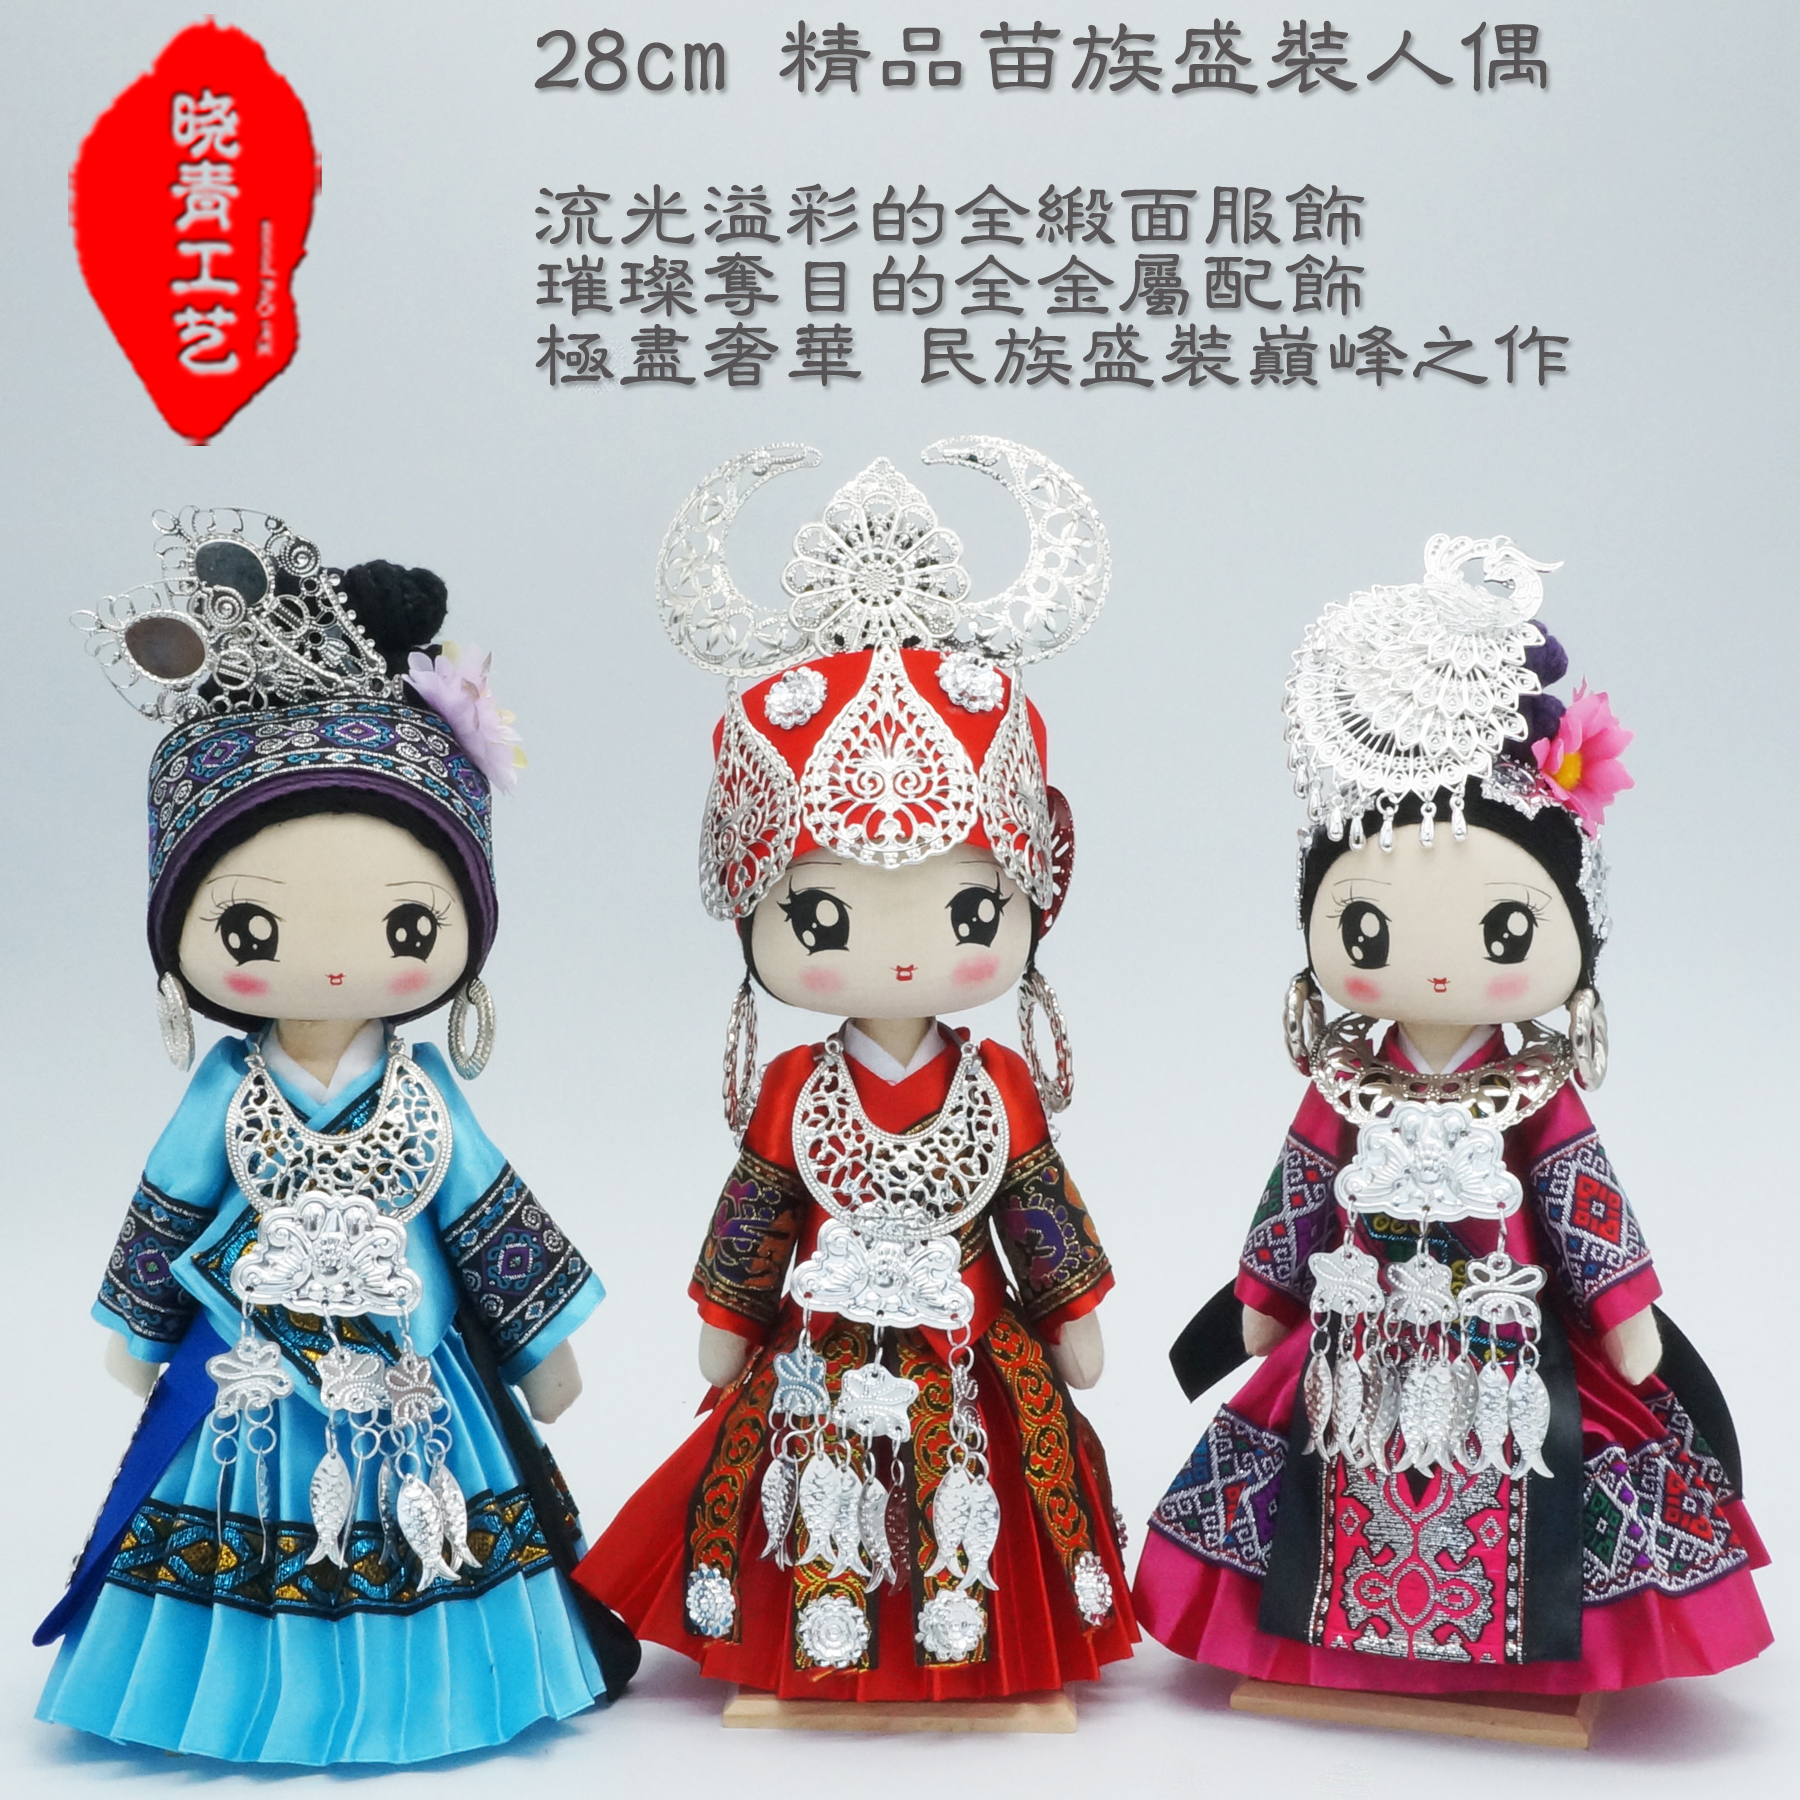 晓青工艺28cm盛装苗族民族娃娃娃娃人偶 中国民族团结创文摆设